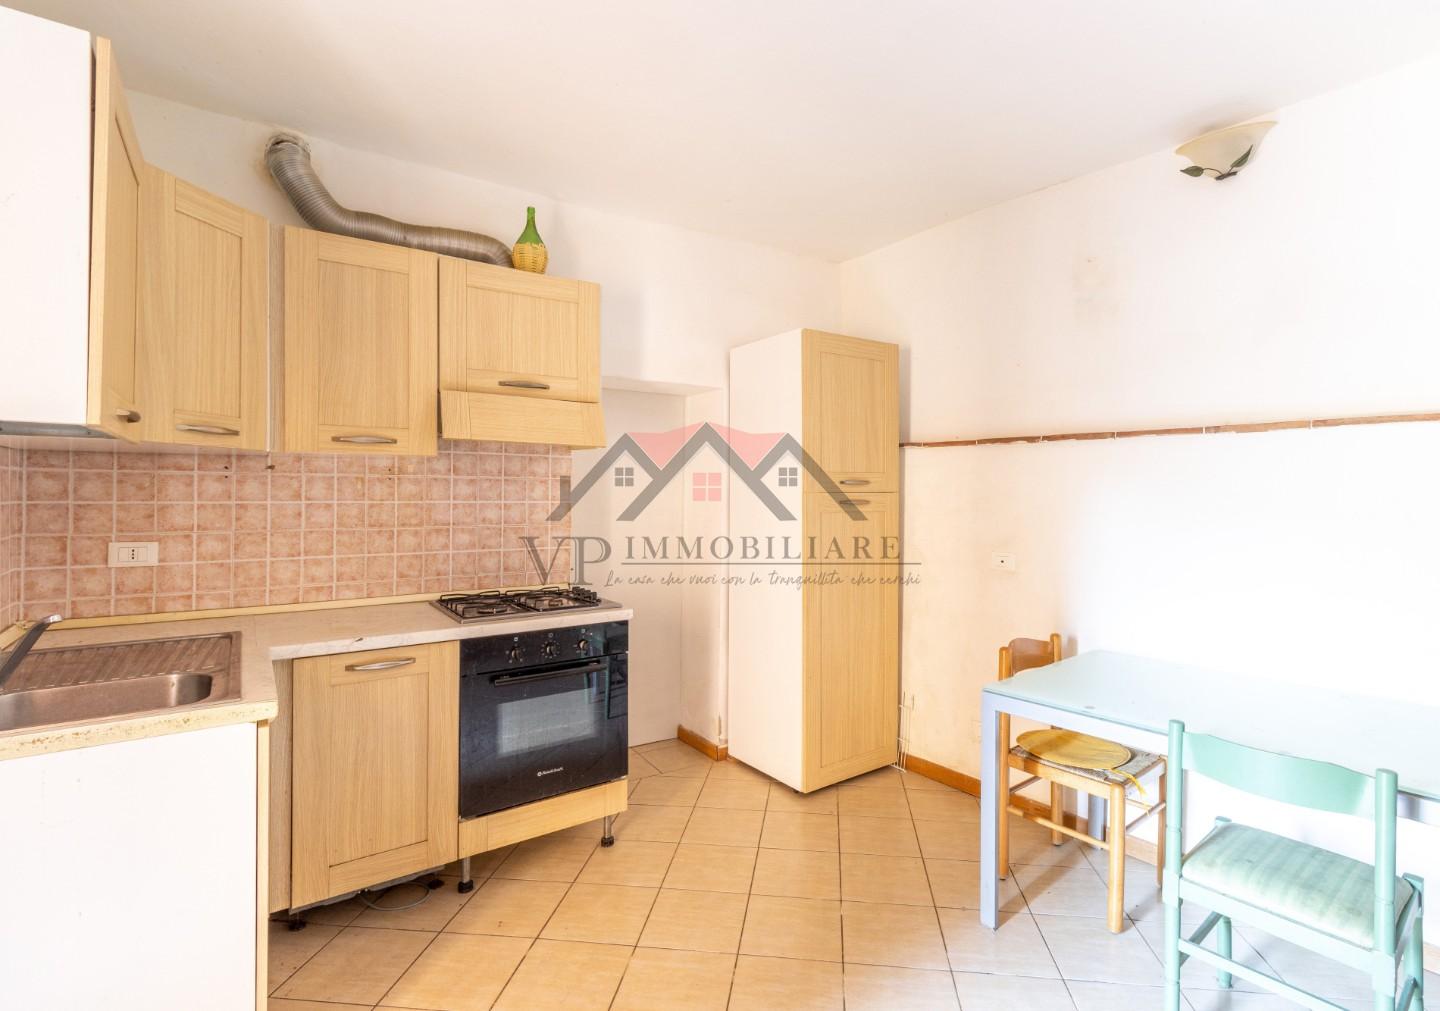 Appartamento in vendita a Pomarance, 3 locali, prezzo € 43.000 | PortaleAgenzieImmobiliari.it